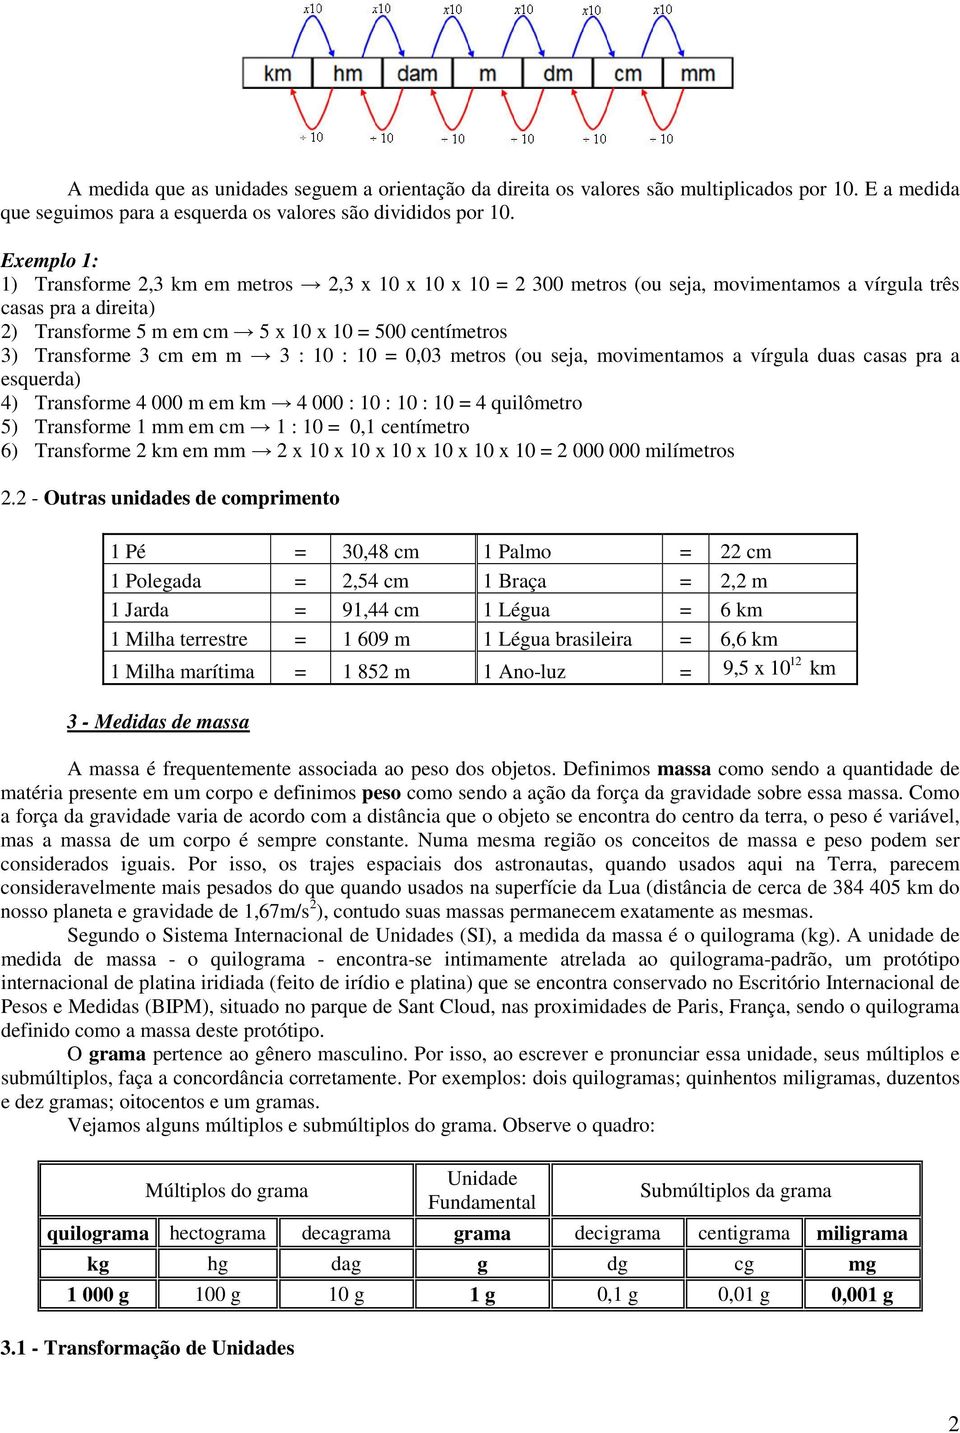 Prof ª Adriana Agronegocio Topicos De Matematica Elementar Medidas Pdf Free Download